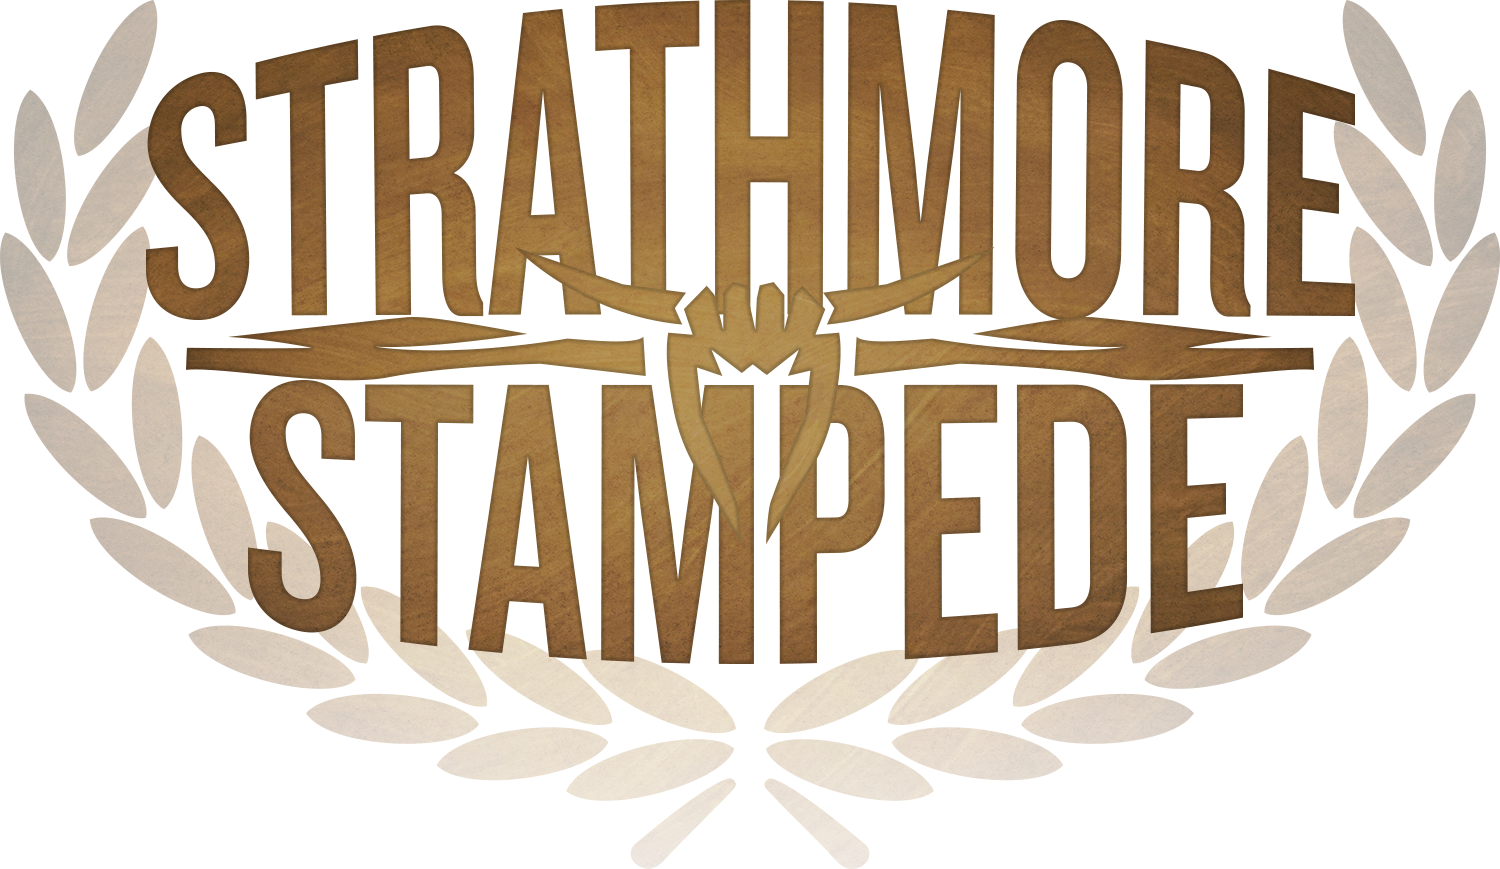 StrathmoreStampede-LogoBW.png